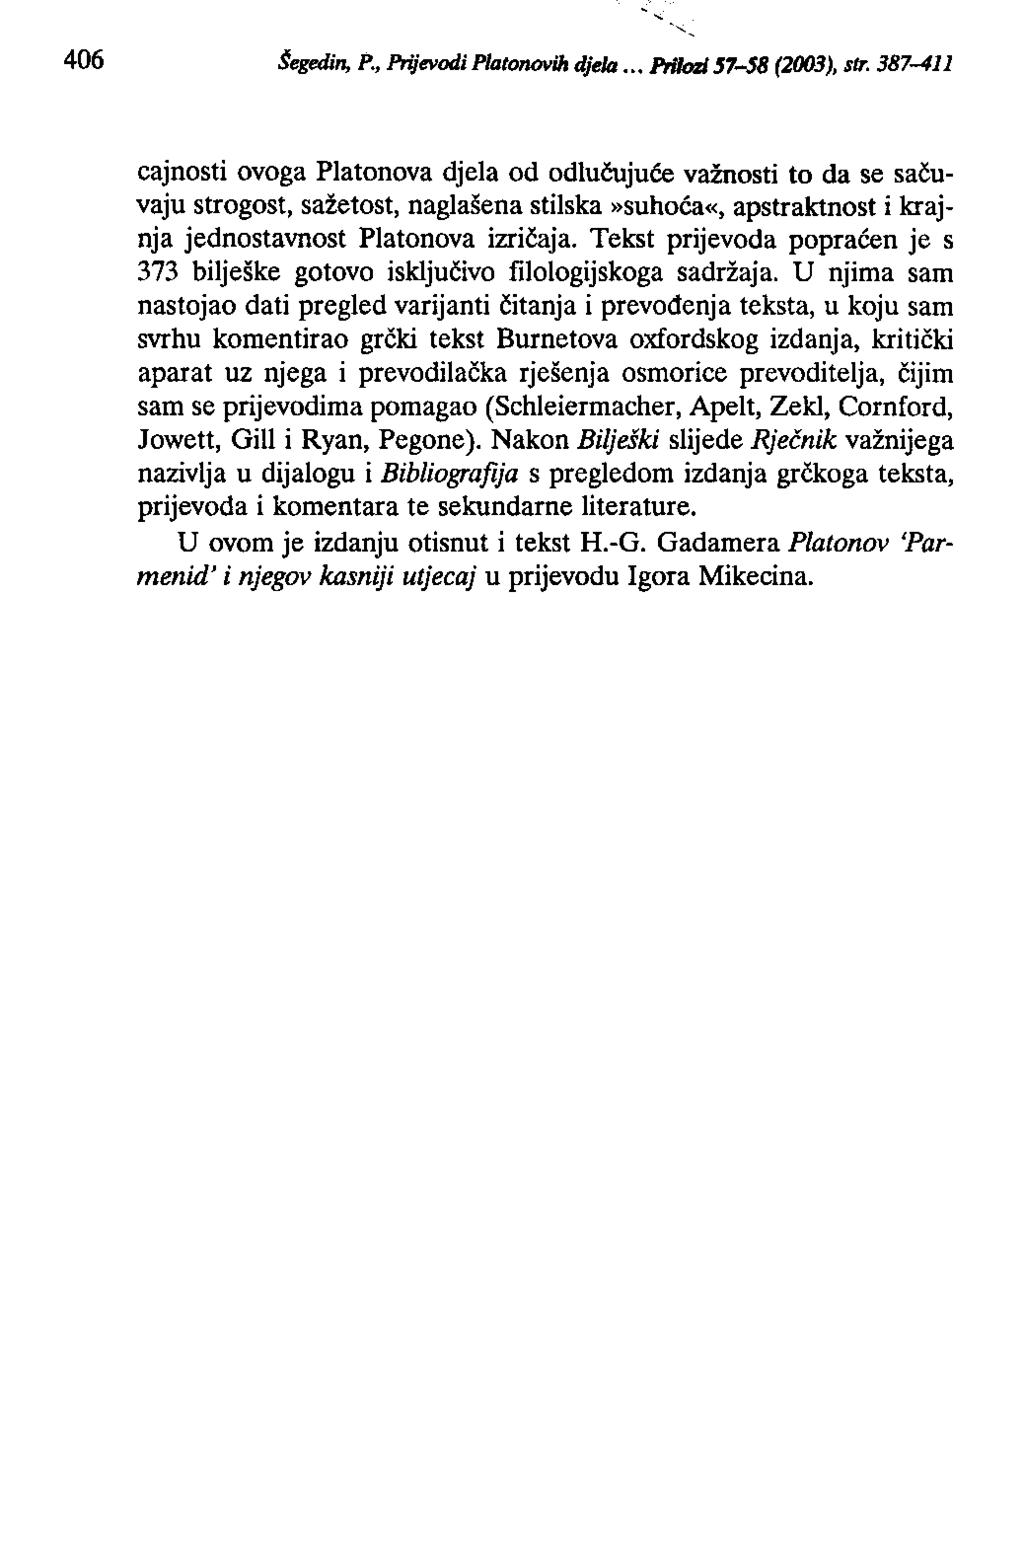 406 Šegedin, P., Prijevodi Platonovih djela.. PrilOZI 57-58 (2003), str.